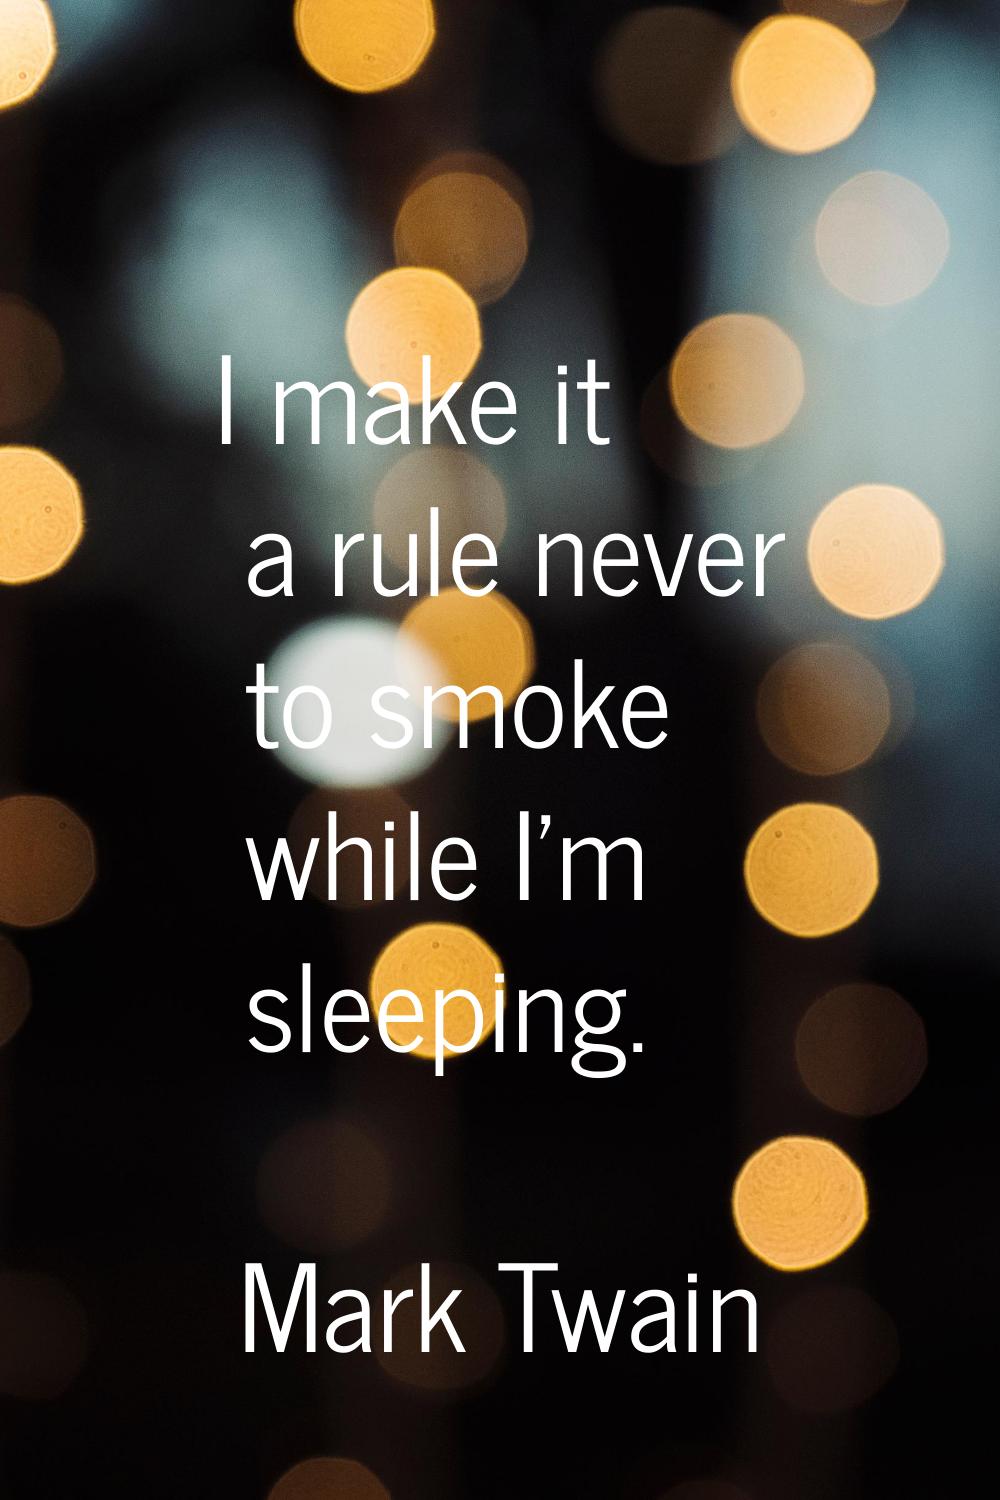 I make it a rule never to smoke while I'm sleeping.